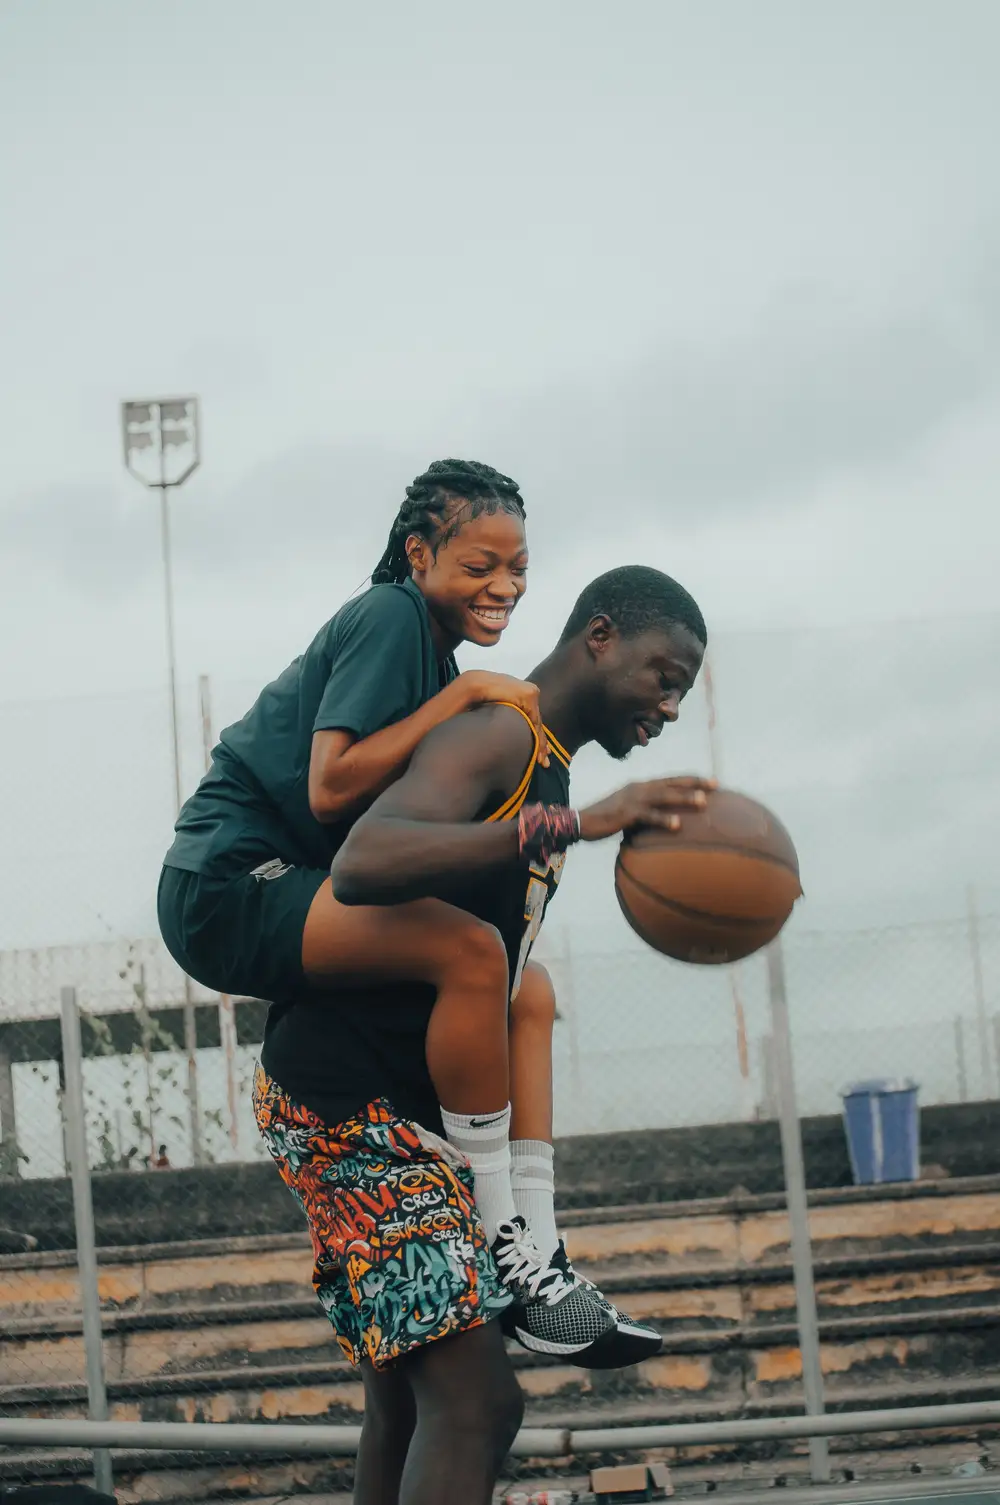 man piggybacking a woman on a basketball court